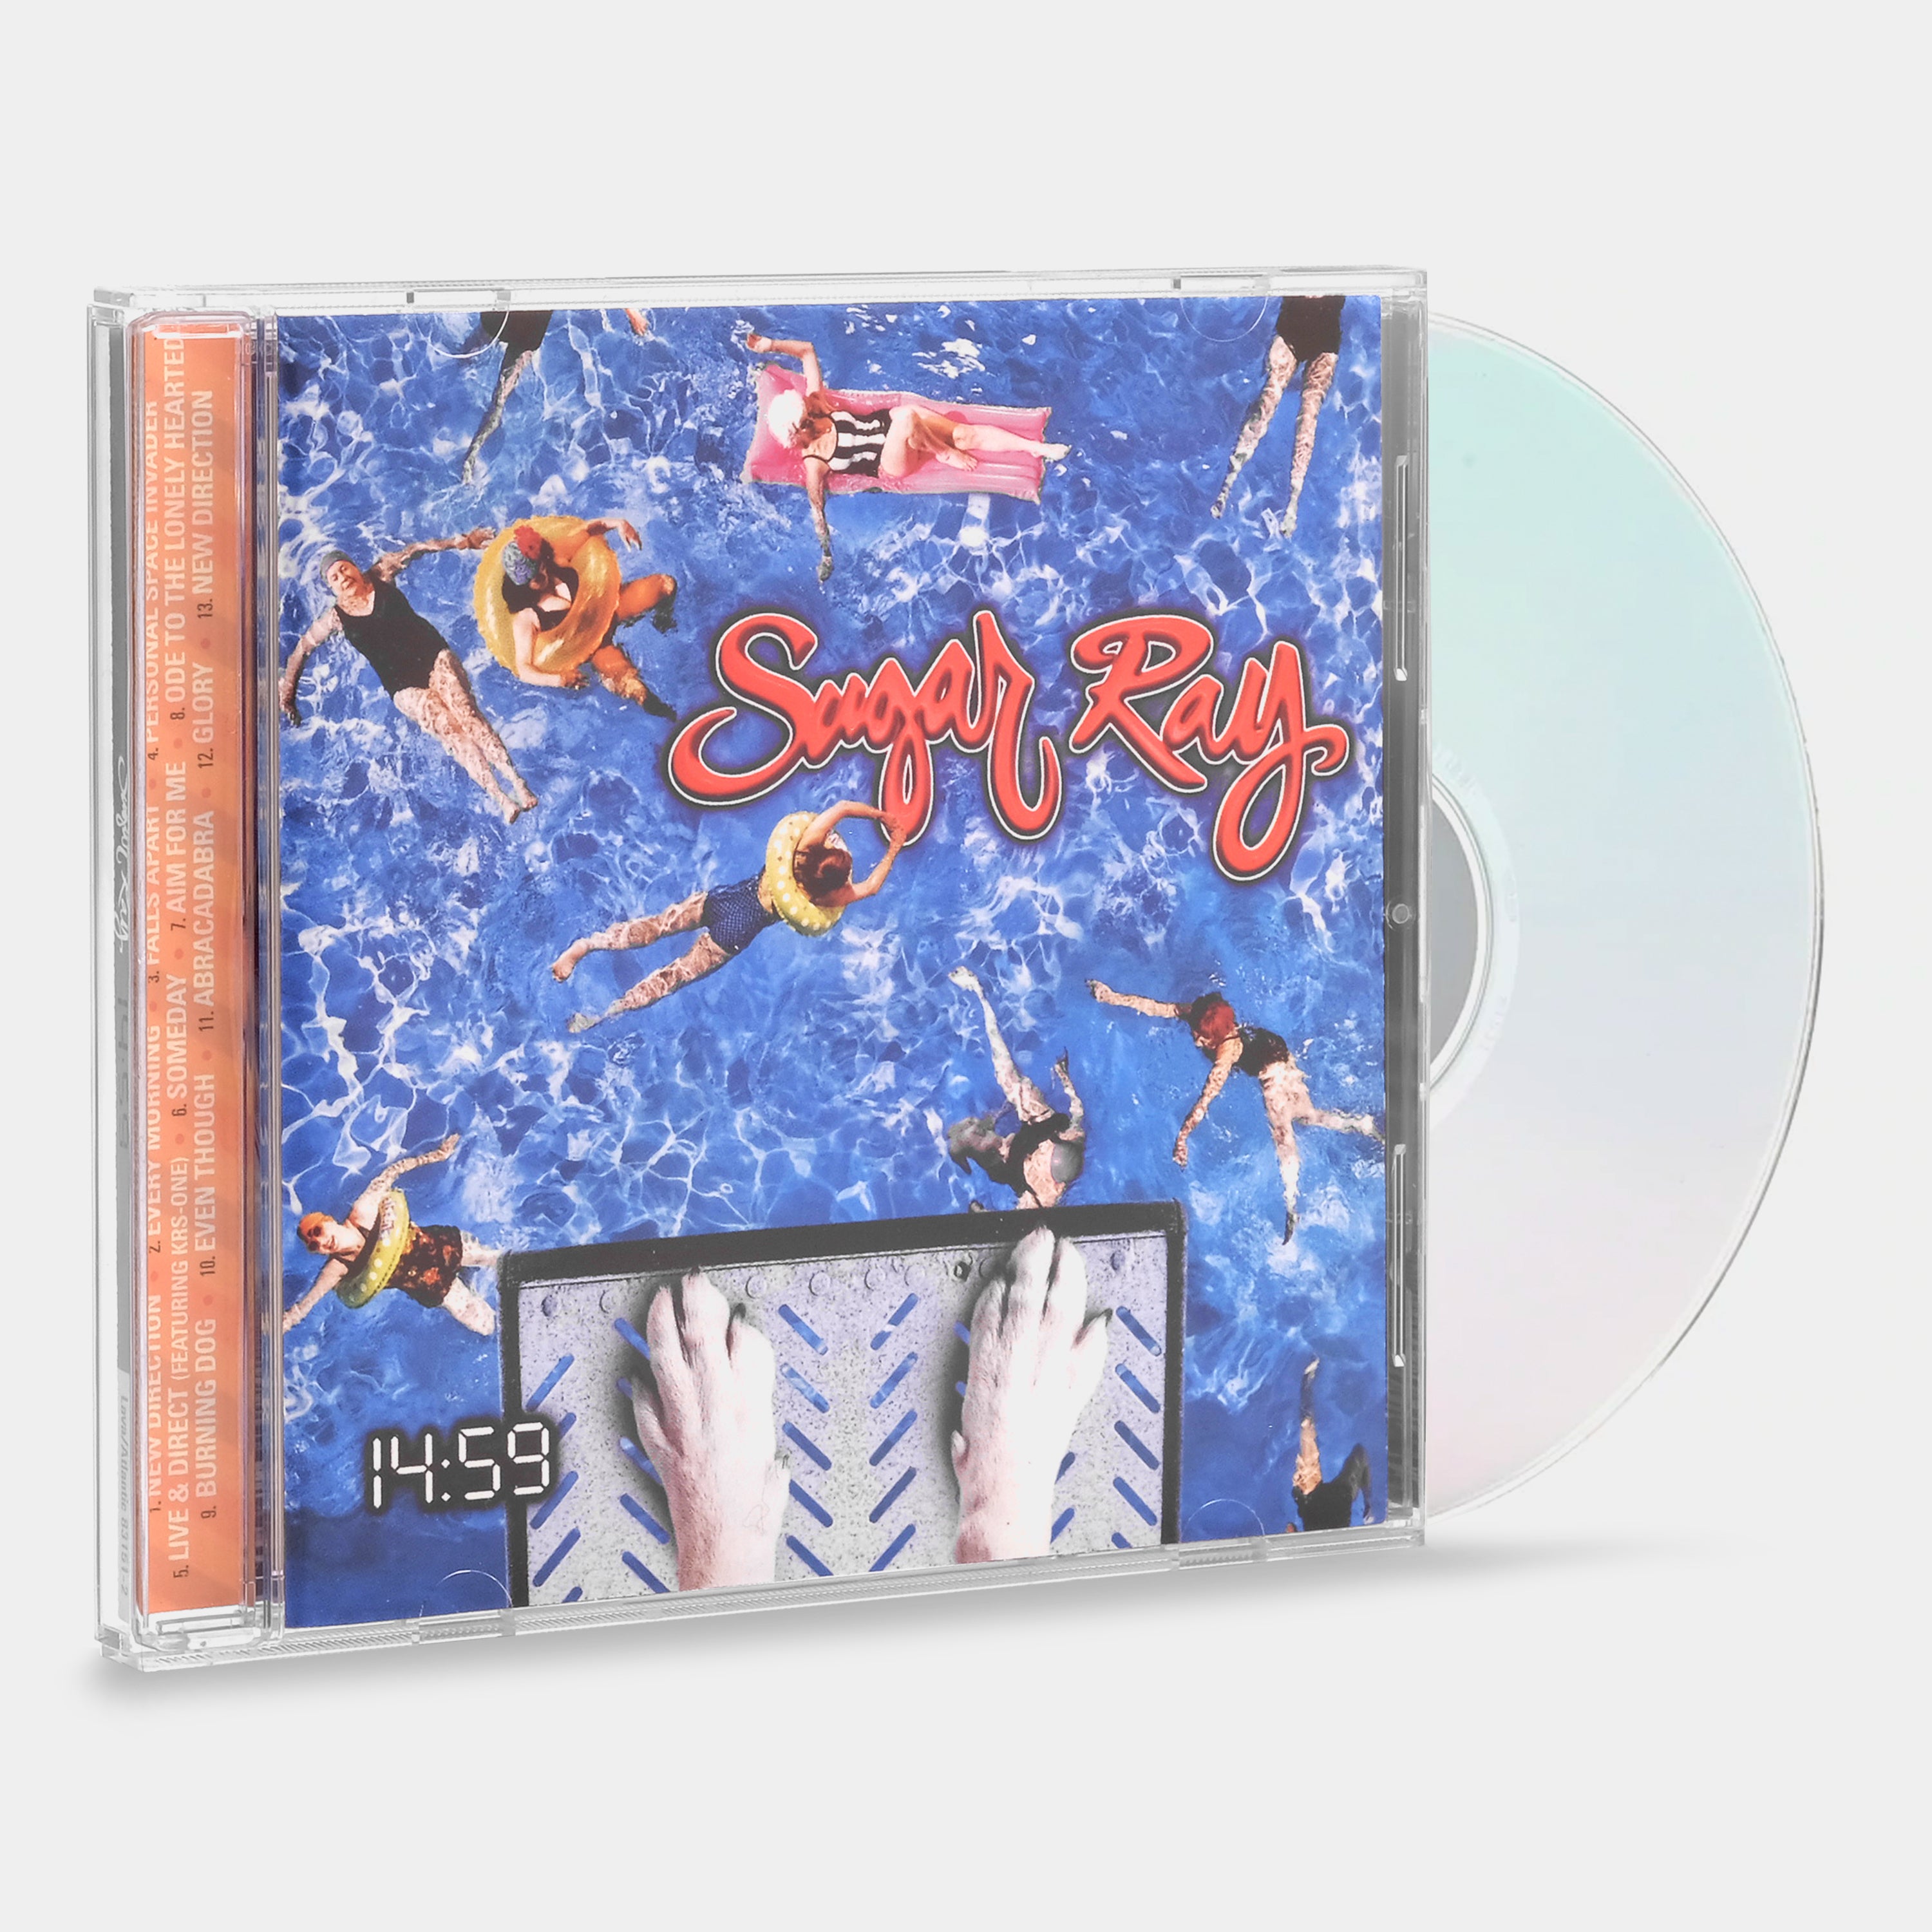 Sugar Ray - 14:59 CD